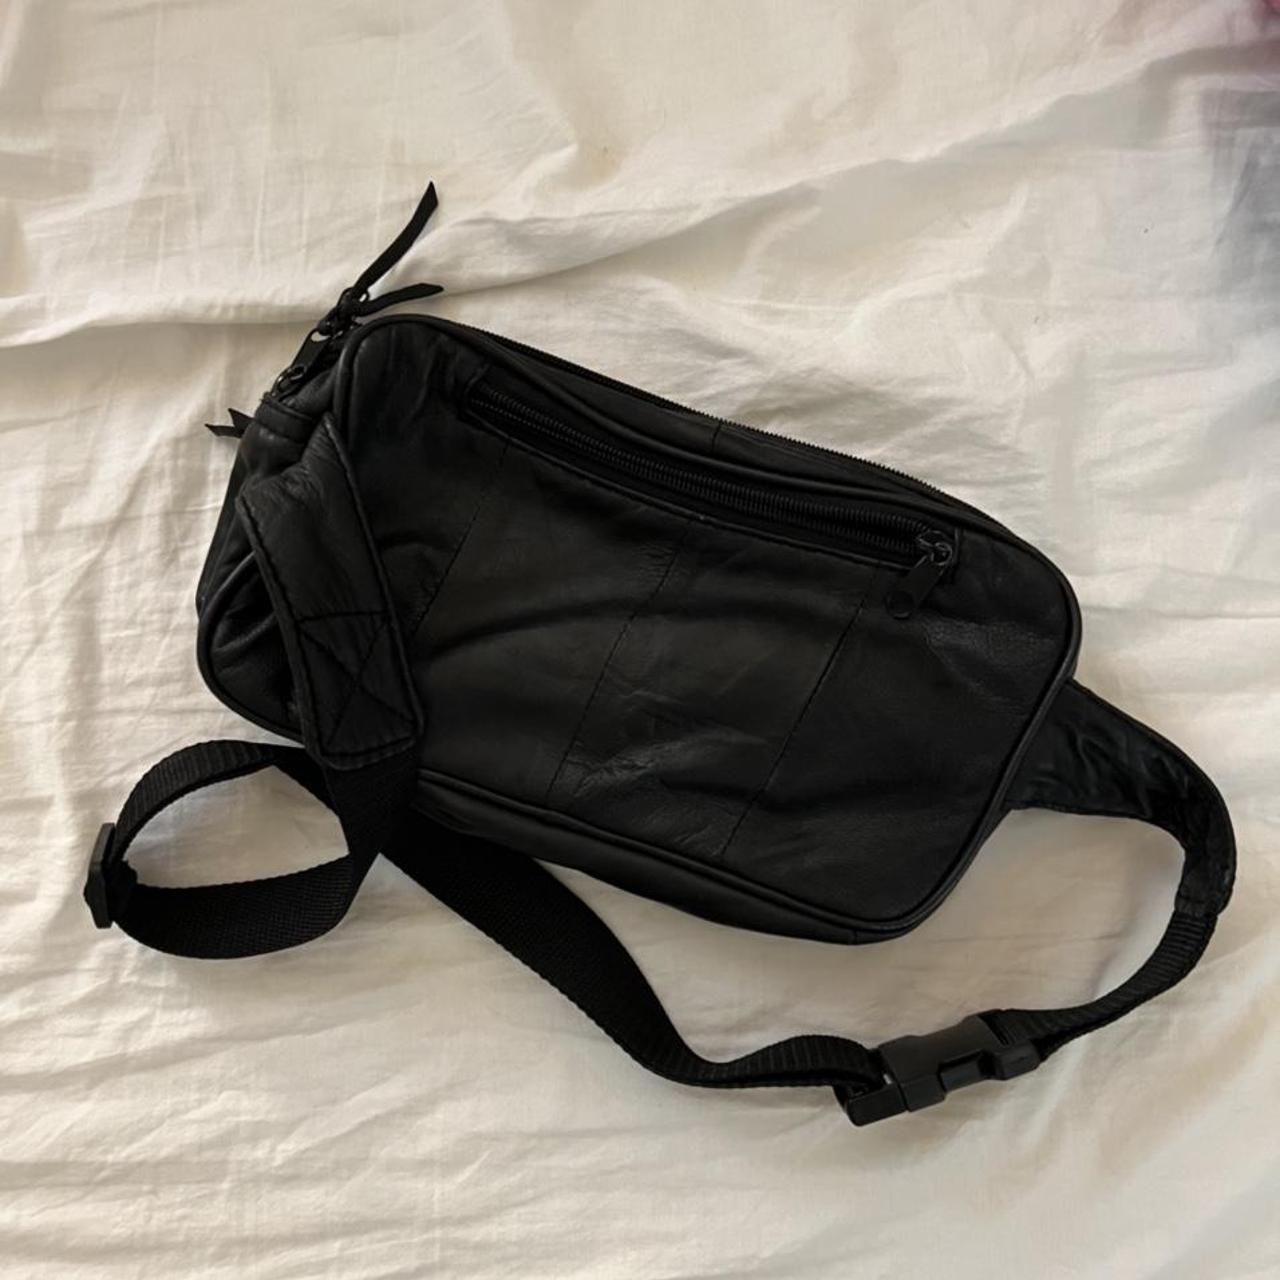 Leather sling bag - Depop